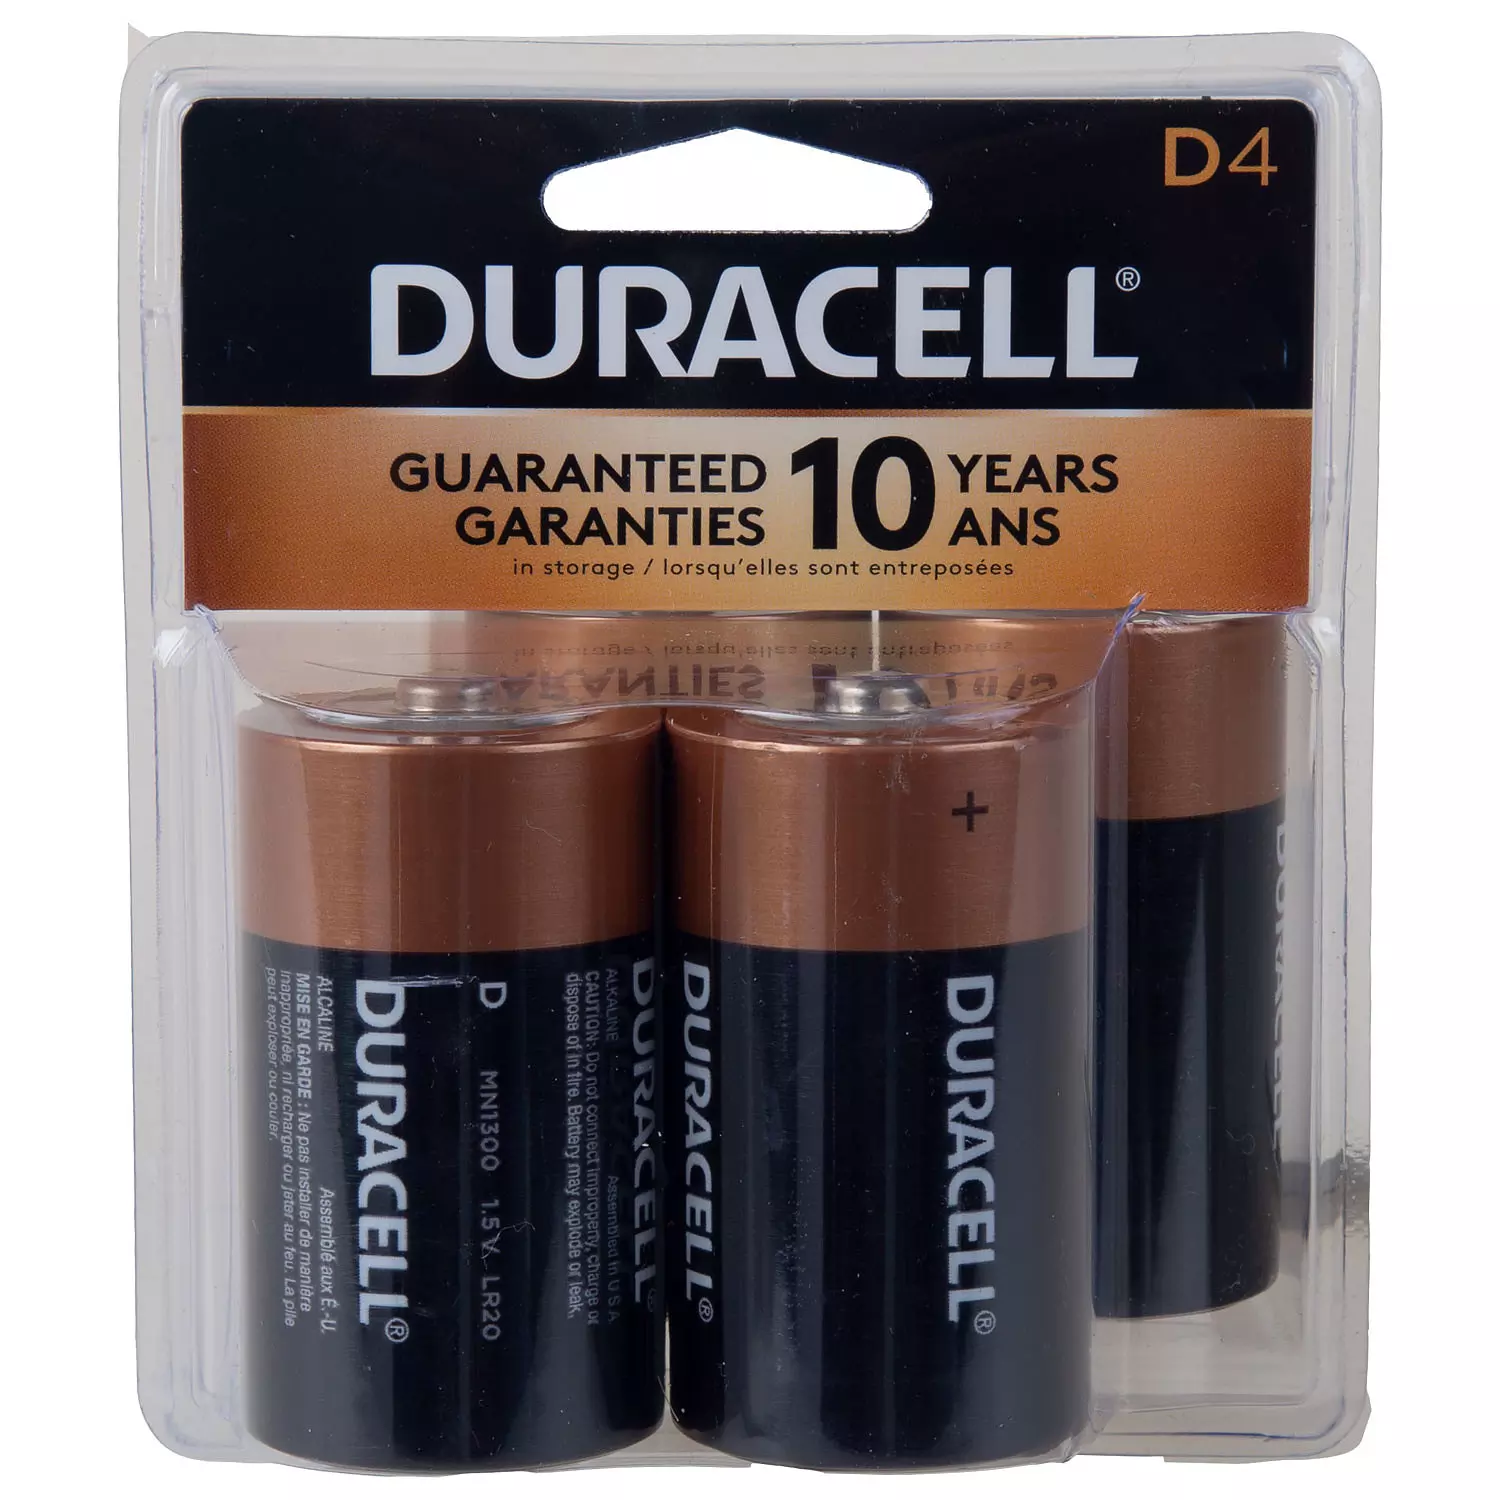 Rappel Consommateur - Détail Lot de 4 piles lithium CR2032 de marque DURACELL  DURACELL